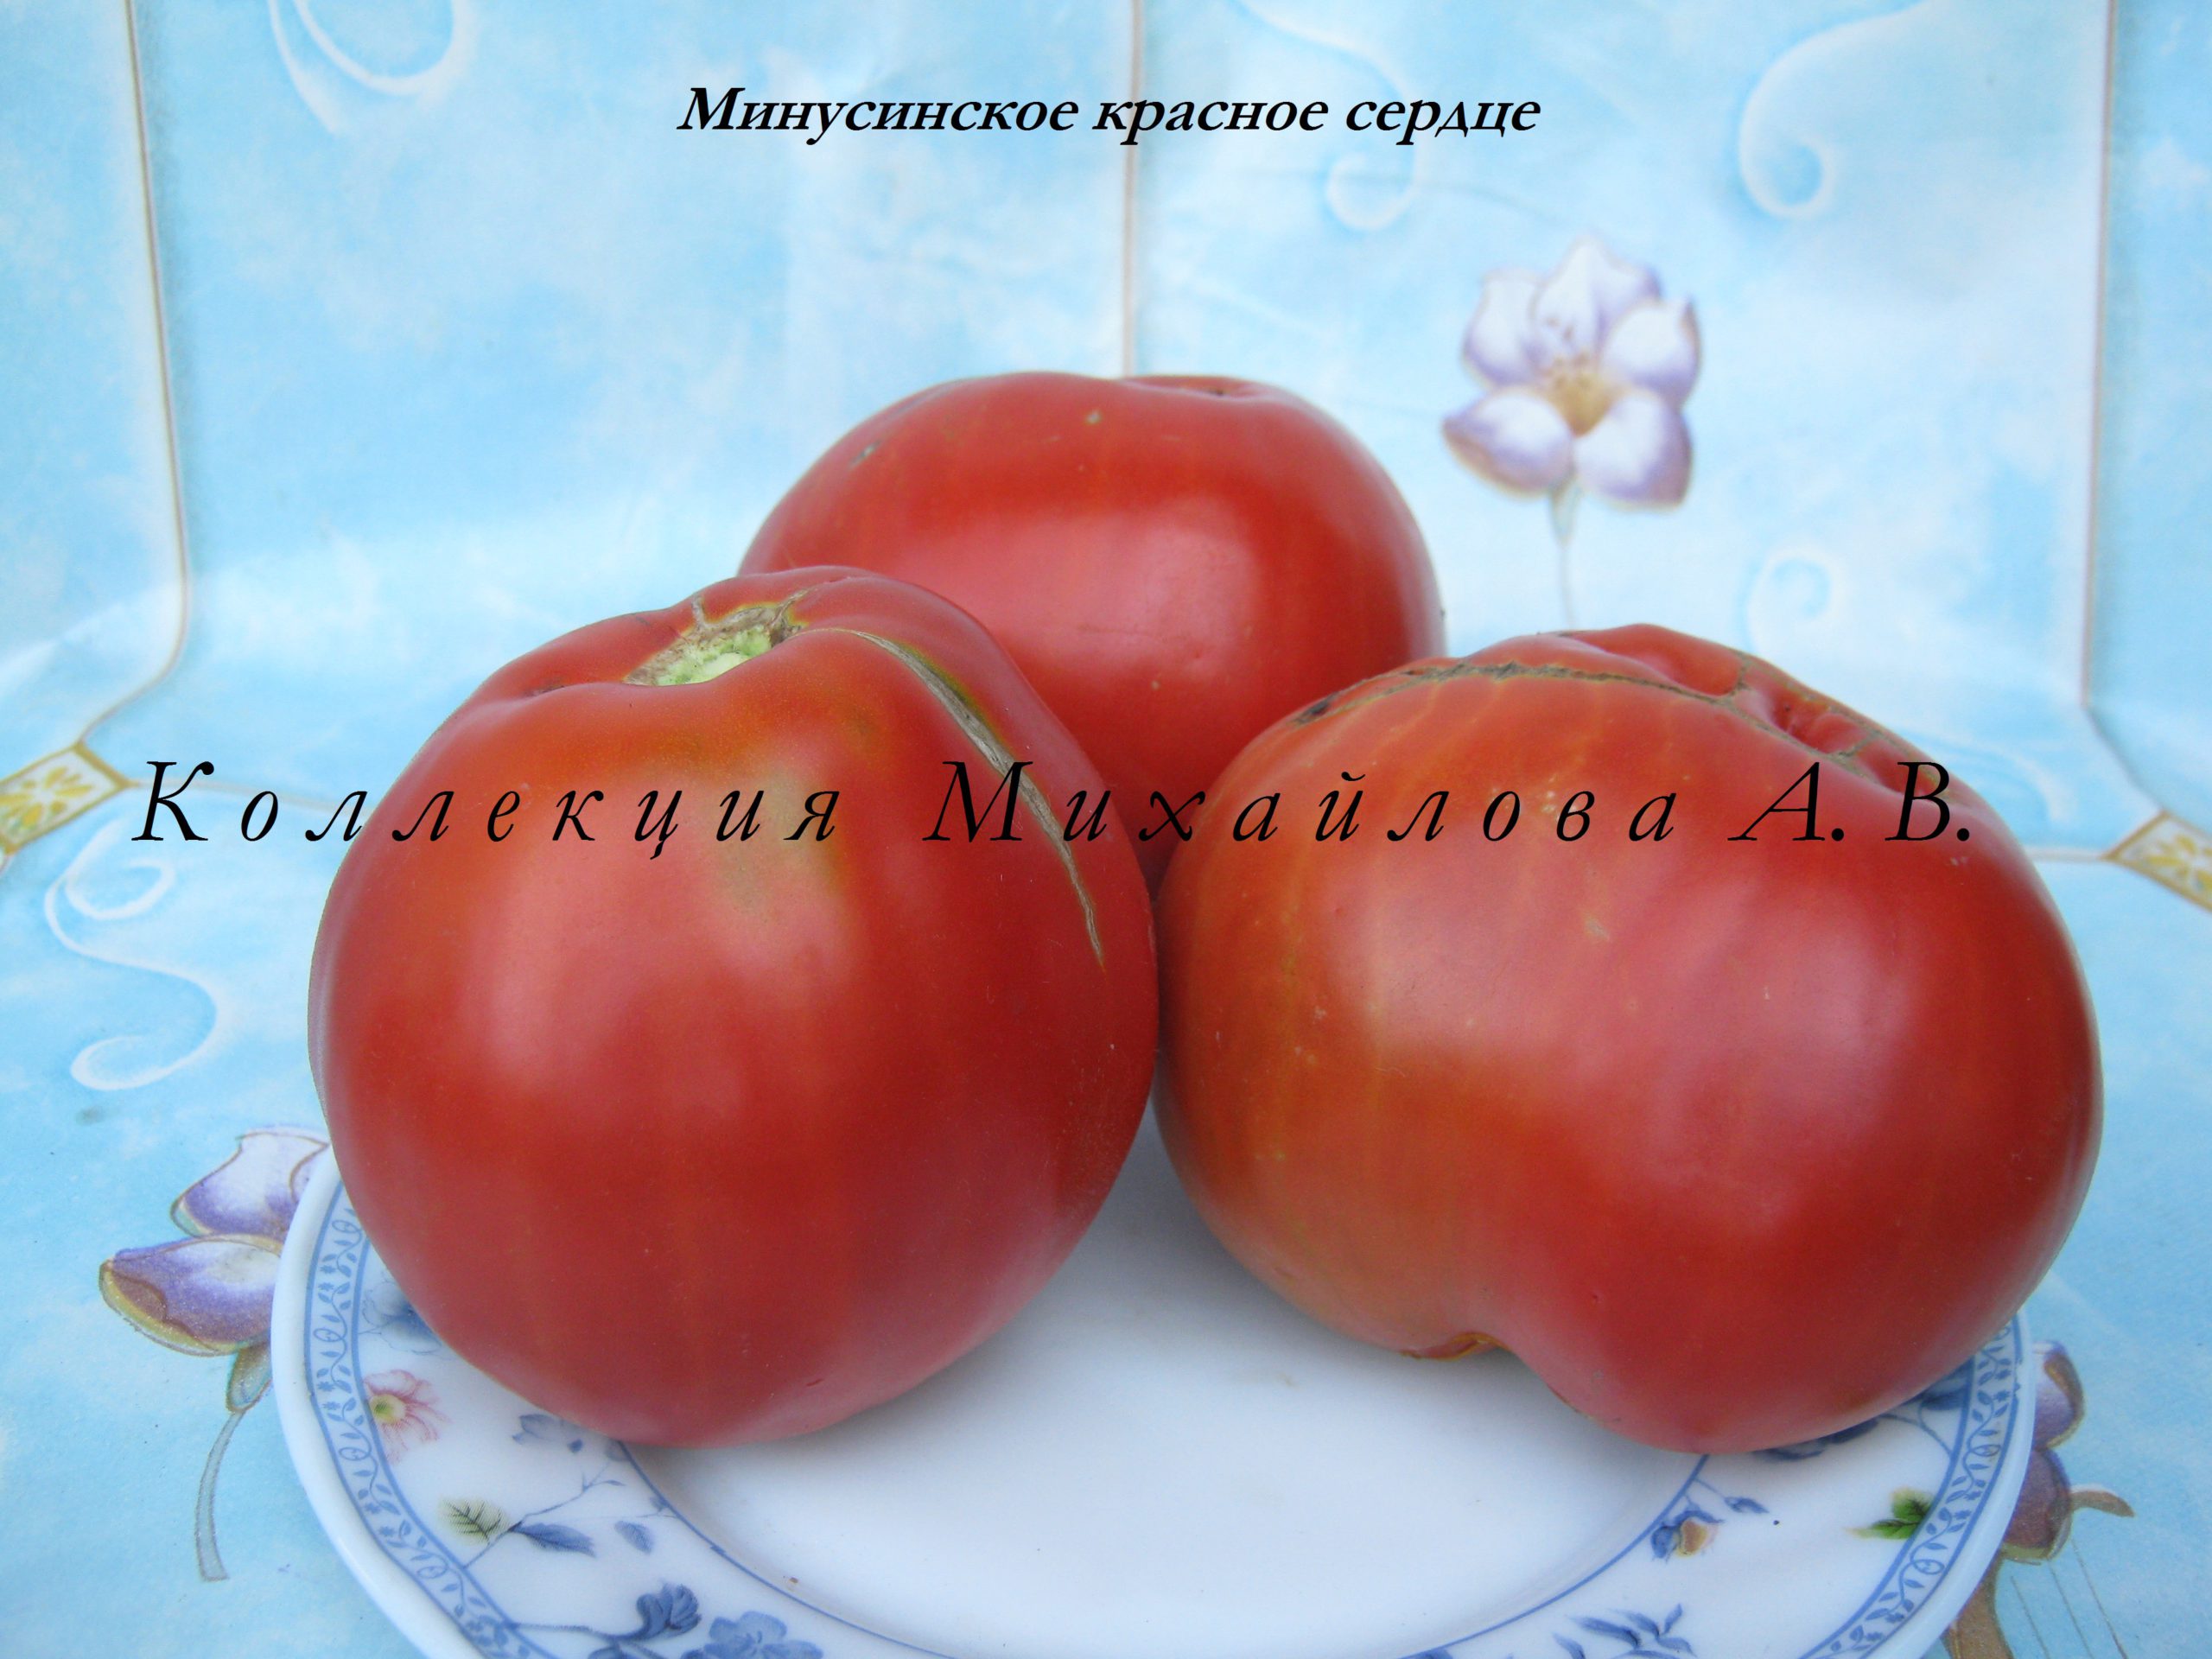 Минусинское красное сердце томат